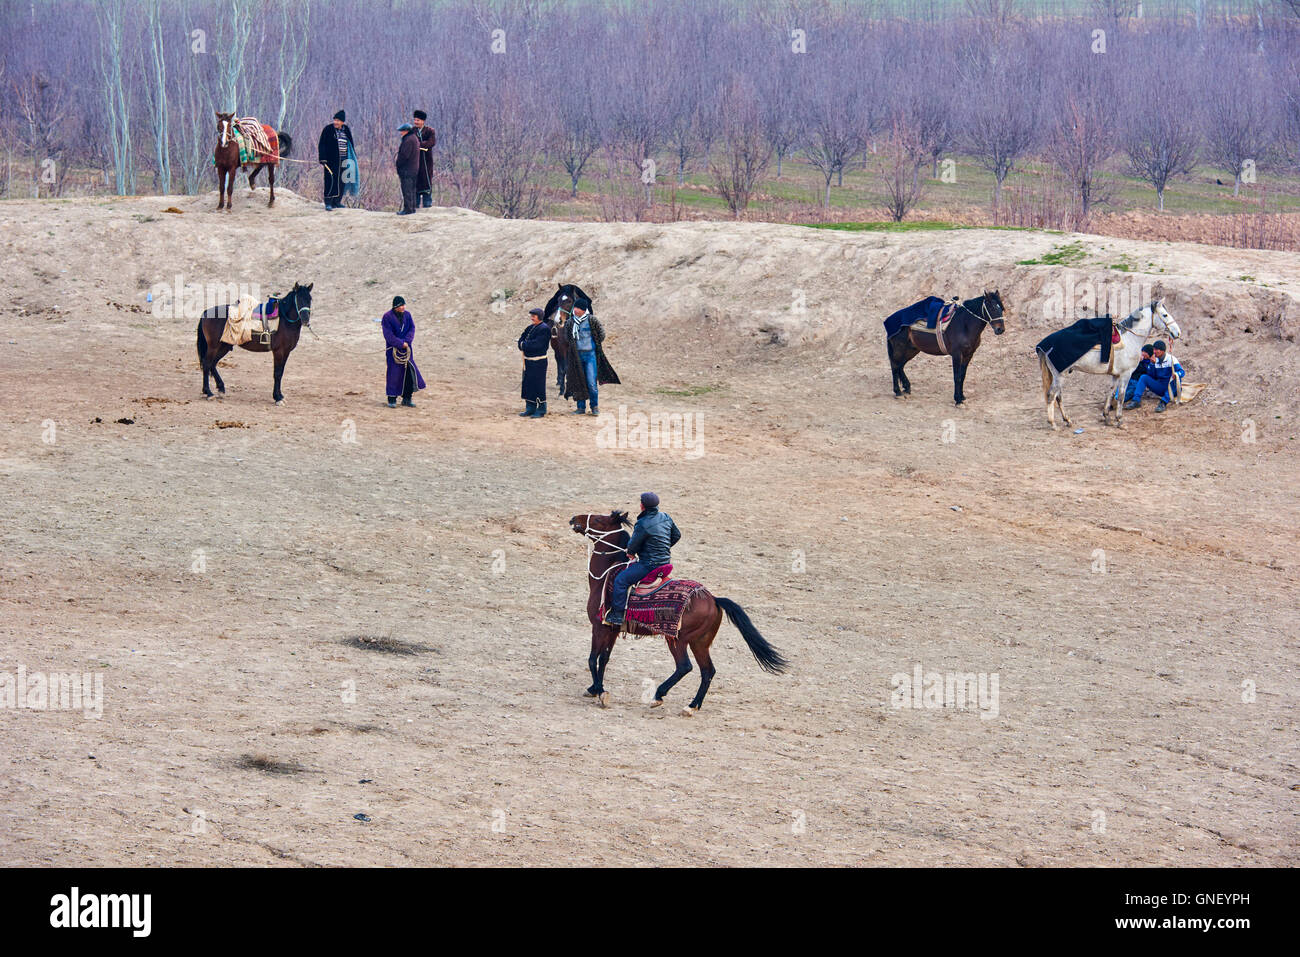 L'Ouzbékistan, Kachka Daria province, Buzkashi, cavaliers luttant pour un corps de mouton Banque D'Images